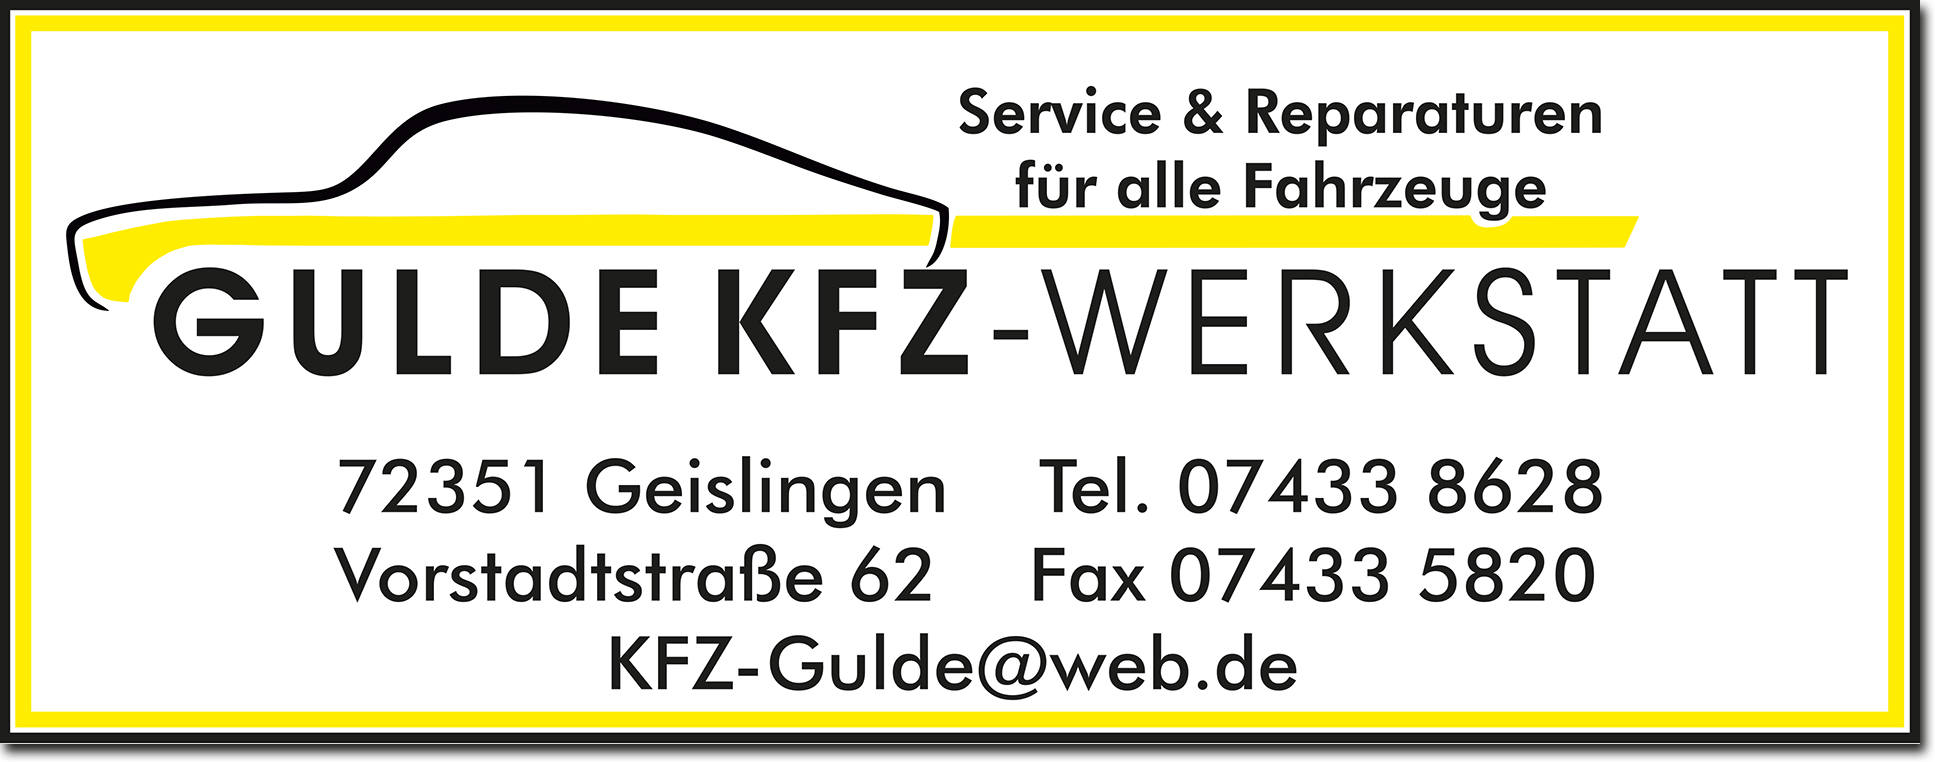 Gulde KFZ-Werkstatt